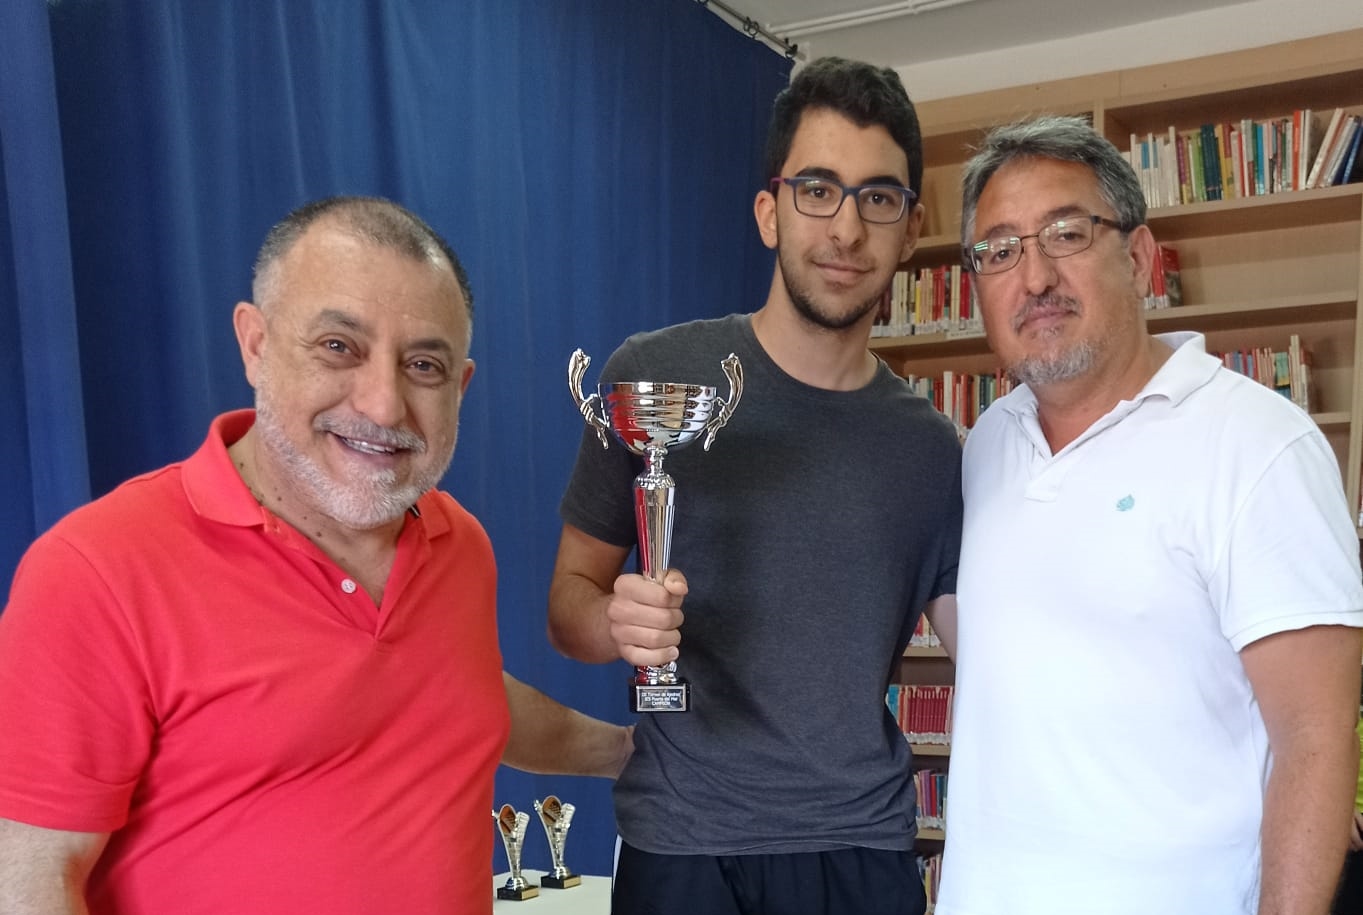 La entrega de trofeos pone el broche final al torneo de ajedrez del IES Puerta del Mar de Almucar